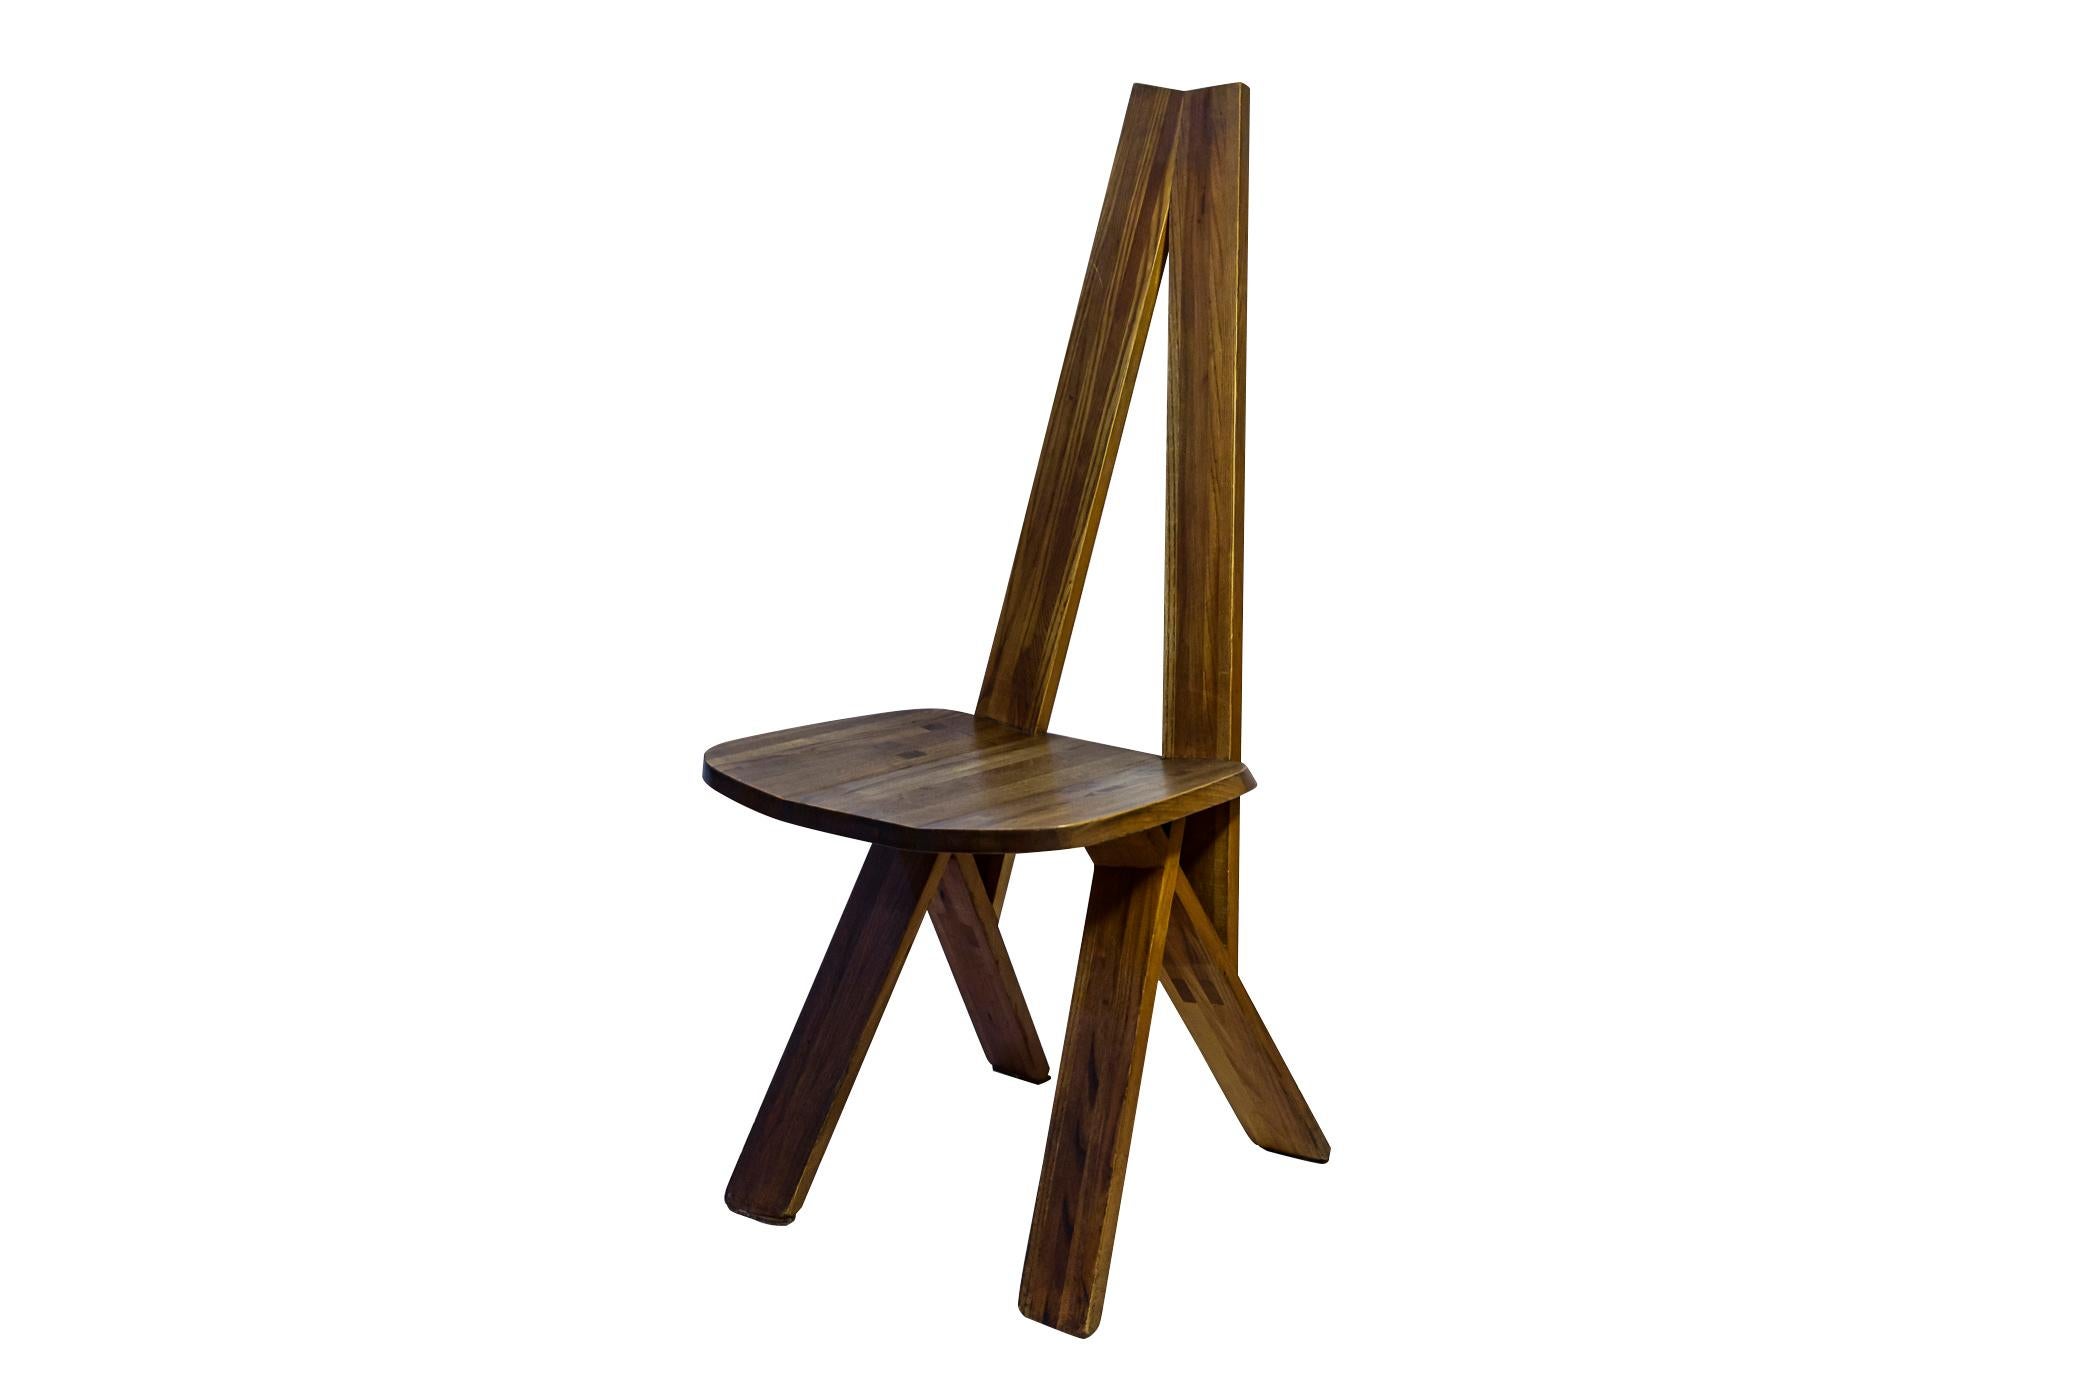 Pierre Chapo (1927-1987), Satz von vier Stühlen,
Esszimmerstuhl Modell S45,
Holz,
Frankreich, um 1970.

Maße: Höhe 105 cm, Breite 43 cm, Tiefe 51 cm, Sitzhöhe 46 cm.

Nach einem Studium in Paris, das von Reisen in die skandinavischen Länder, dem